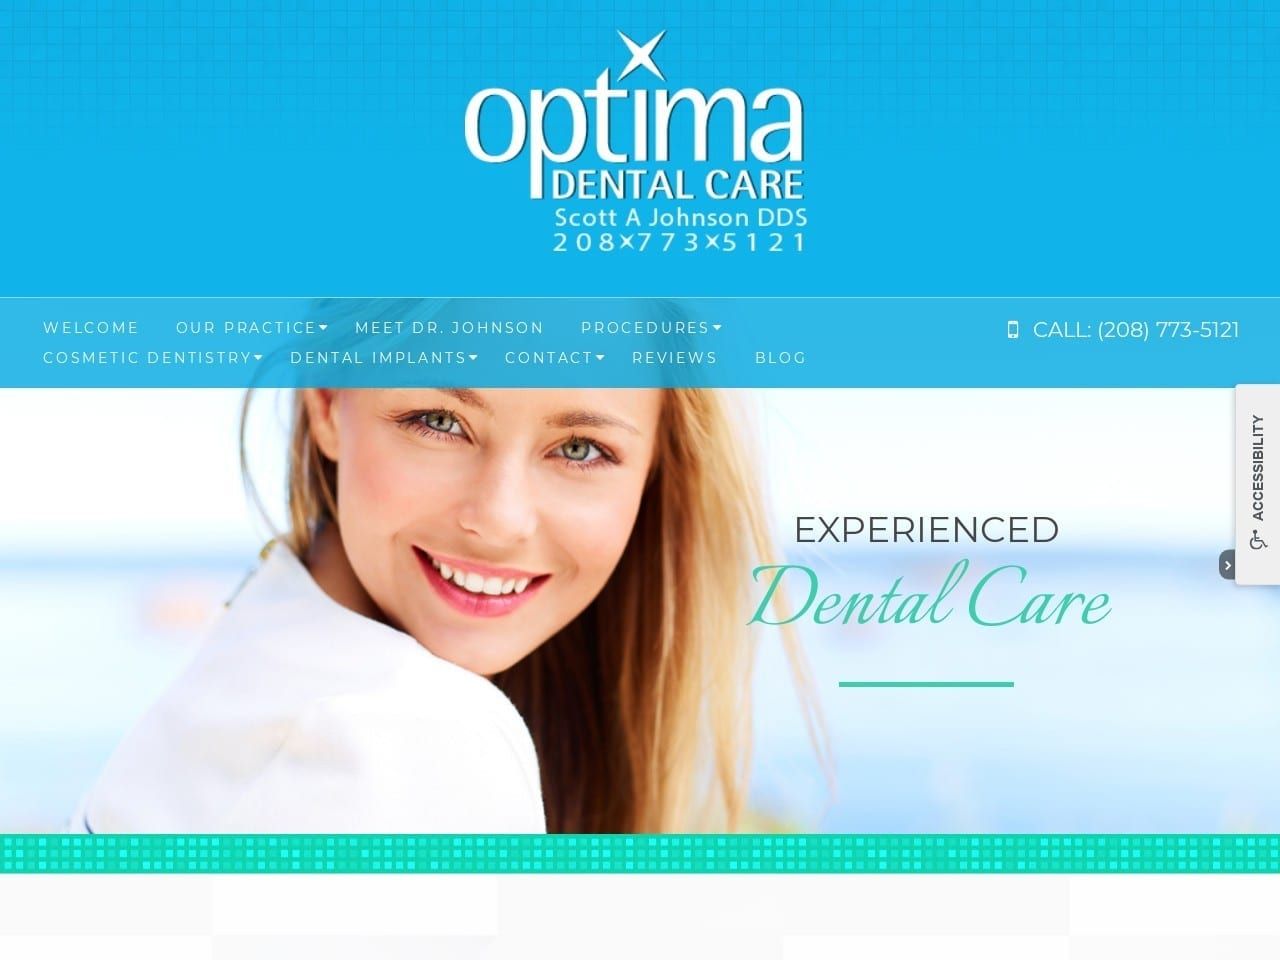 Optima Dental Care Website Screenshot from optimadentalcare.com